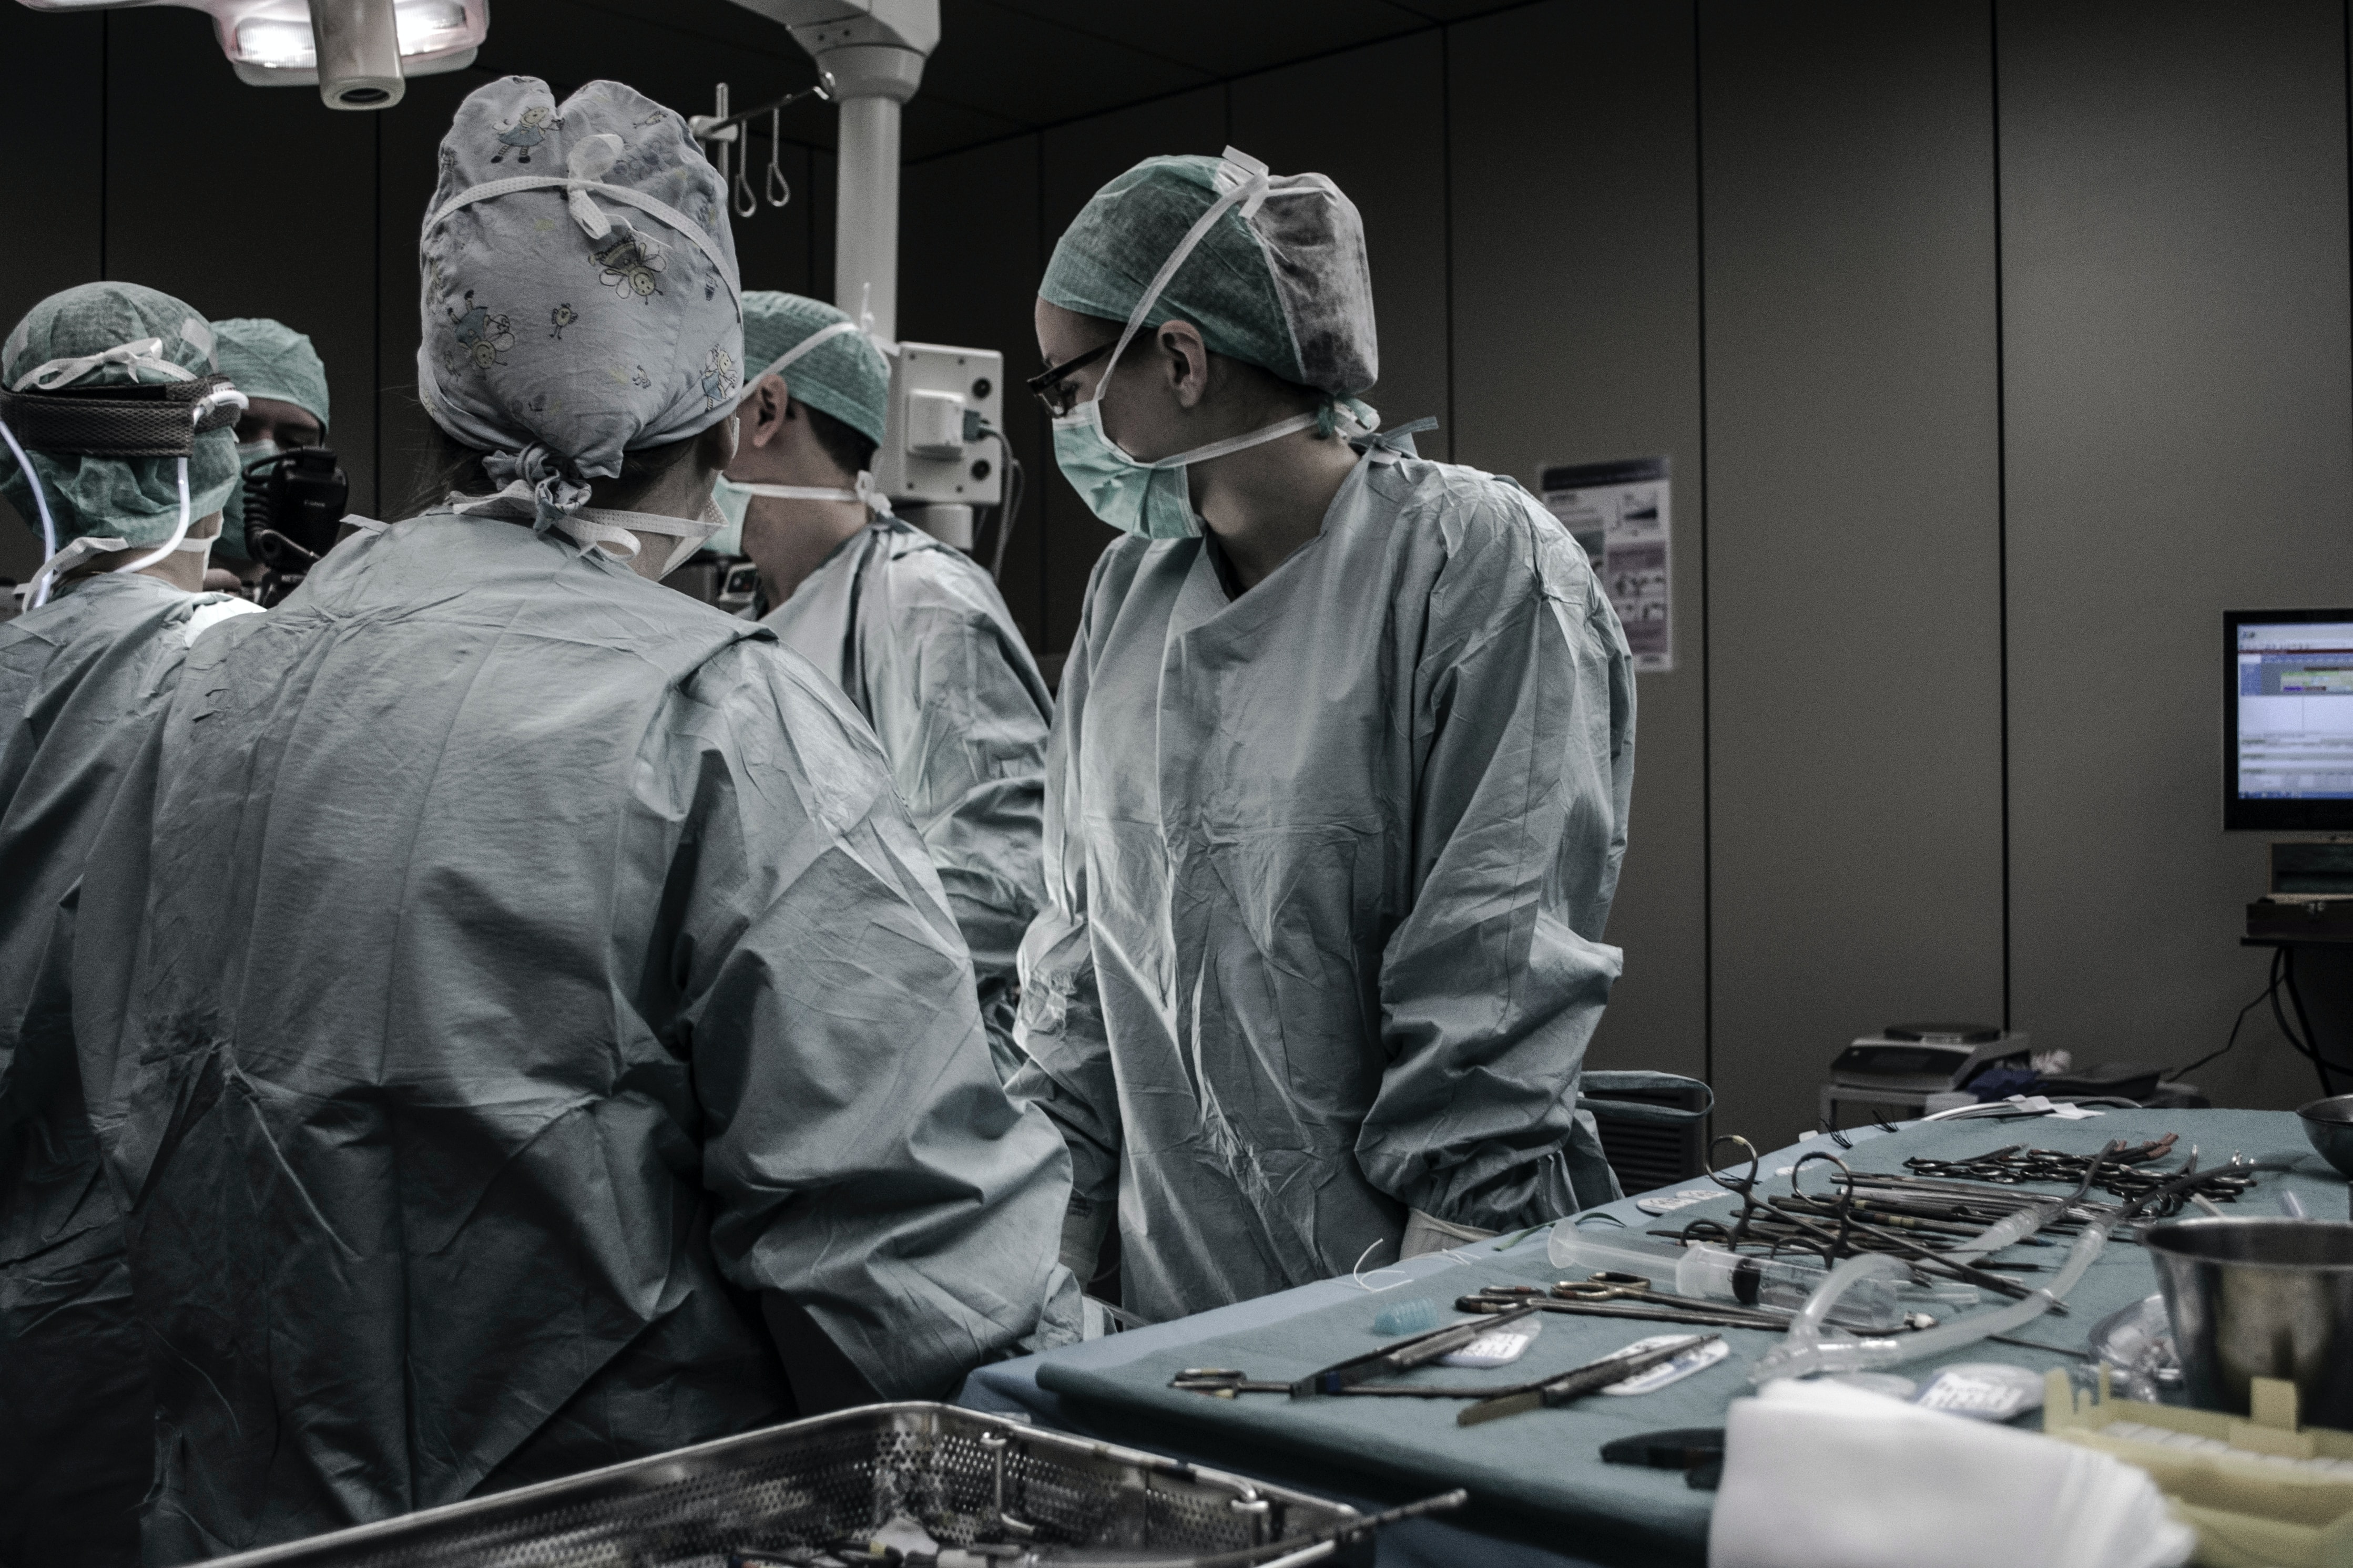 SJU Satu Mare introduce servicii de chirurgie oncologică